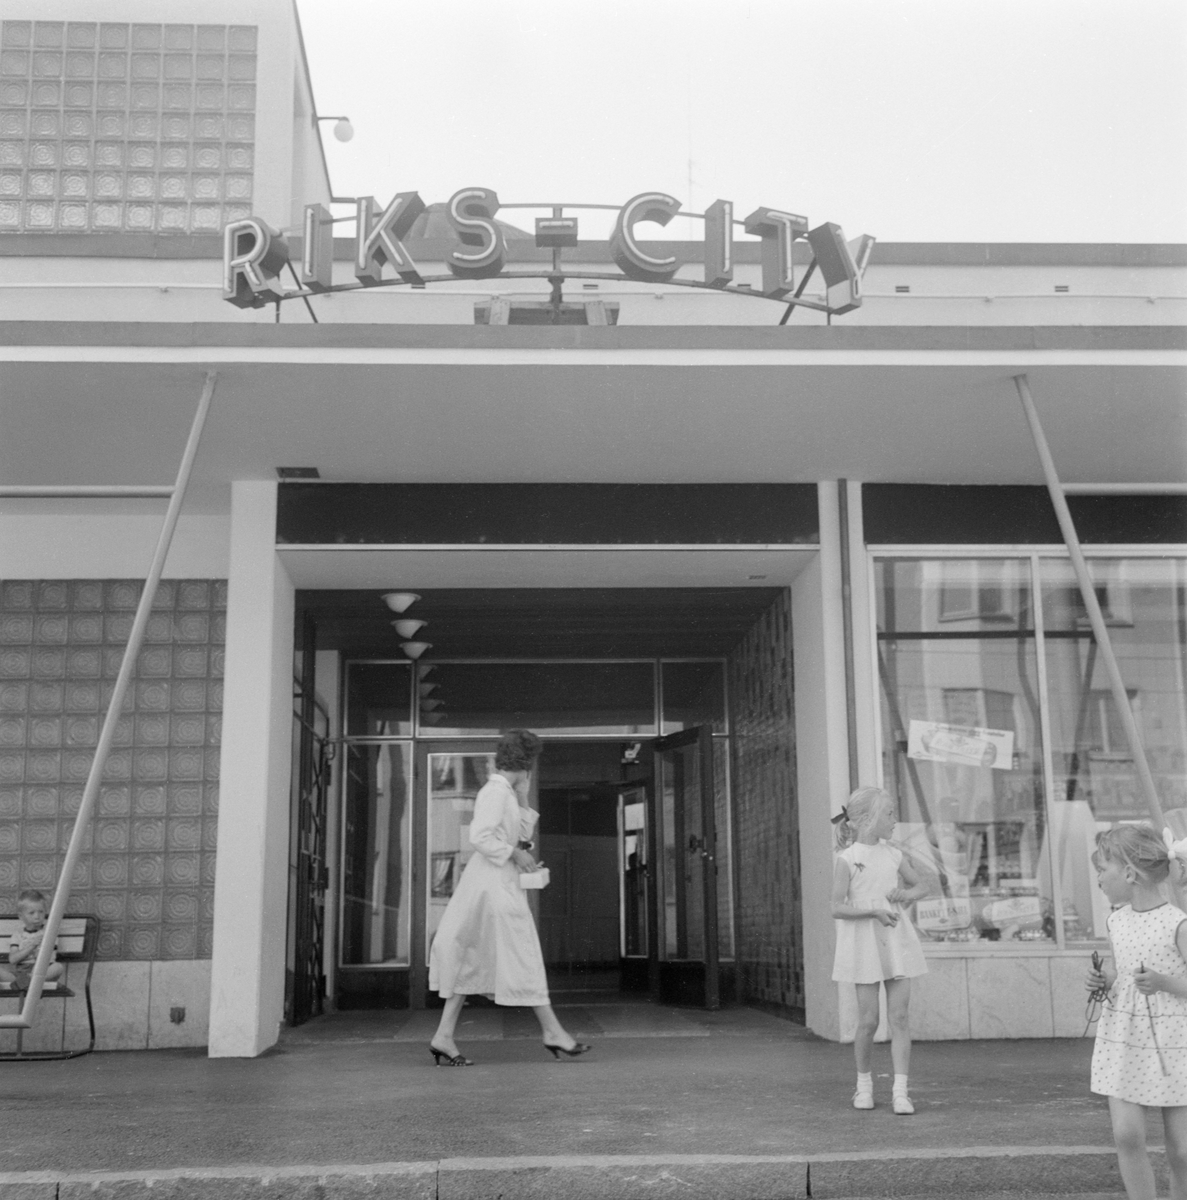 Centrumbildningen Riks-City i Norrköping, en stad i staden, växte fram under senare delen av 1950-talet. Höga bostadshus som fylldes med ljus och luft och gav plats för grönska, med samhällsservice in på knutarna och socialt hållbara strukturer, var en viktig komponent i decenniets folkhemsbygge. Bilden visar entrén till själva stadsdelscentrumet.